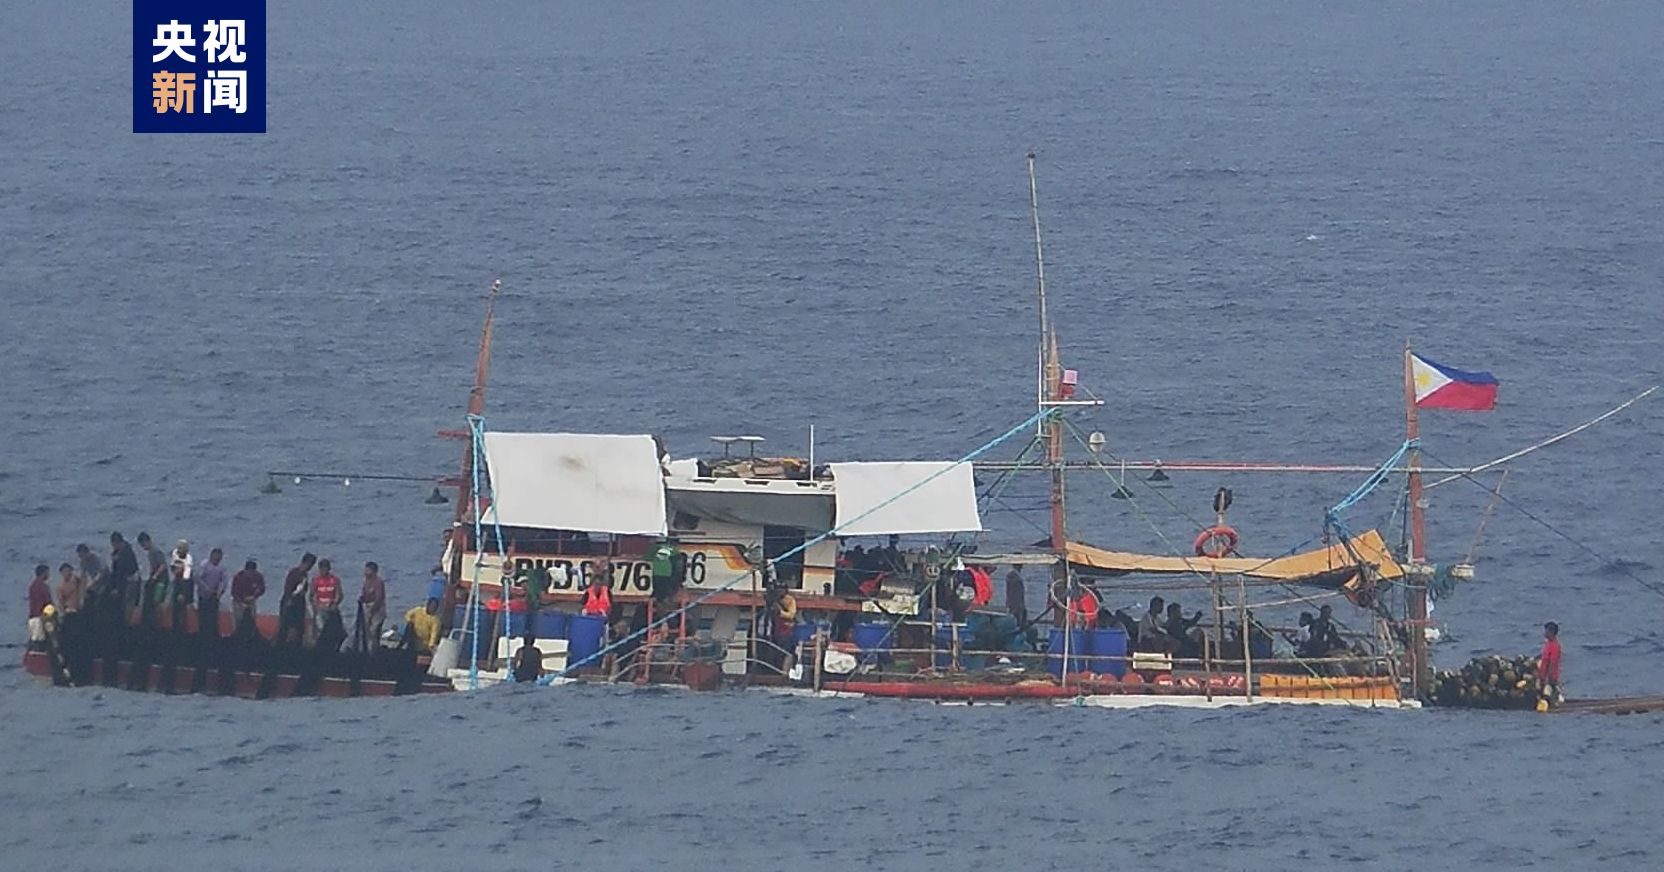 菲律宾多艘船只在我黄岩岛邻近海域非法聚集 中国海警依法管制